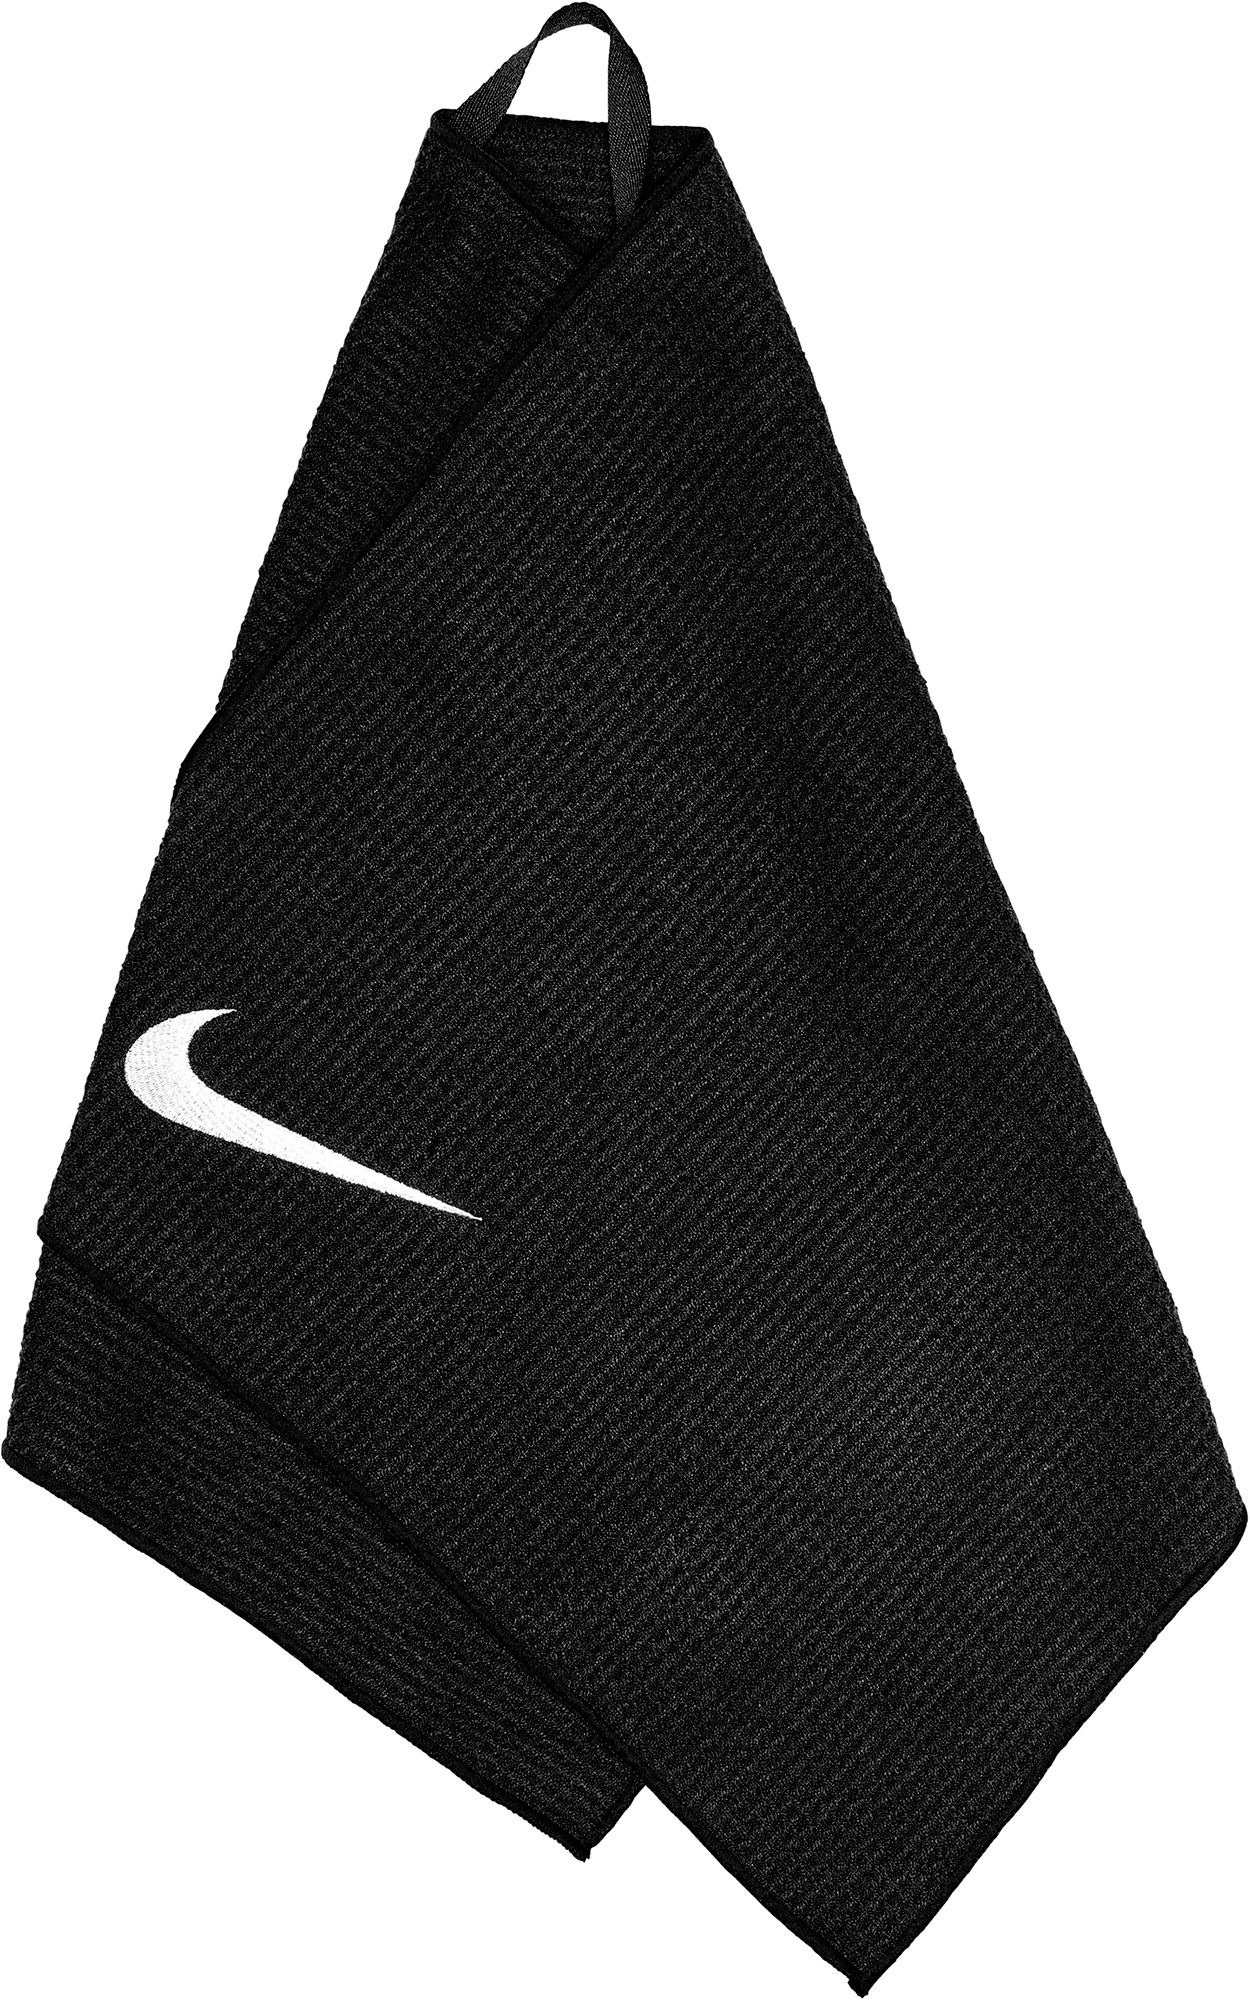 Nike Caddy 2.0 Golf Towel